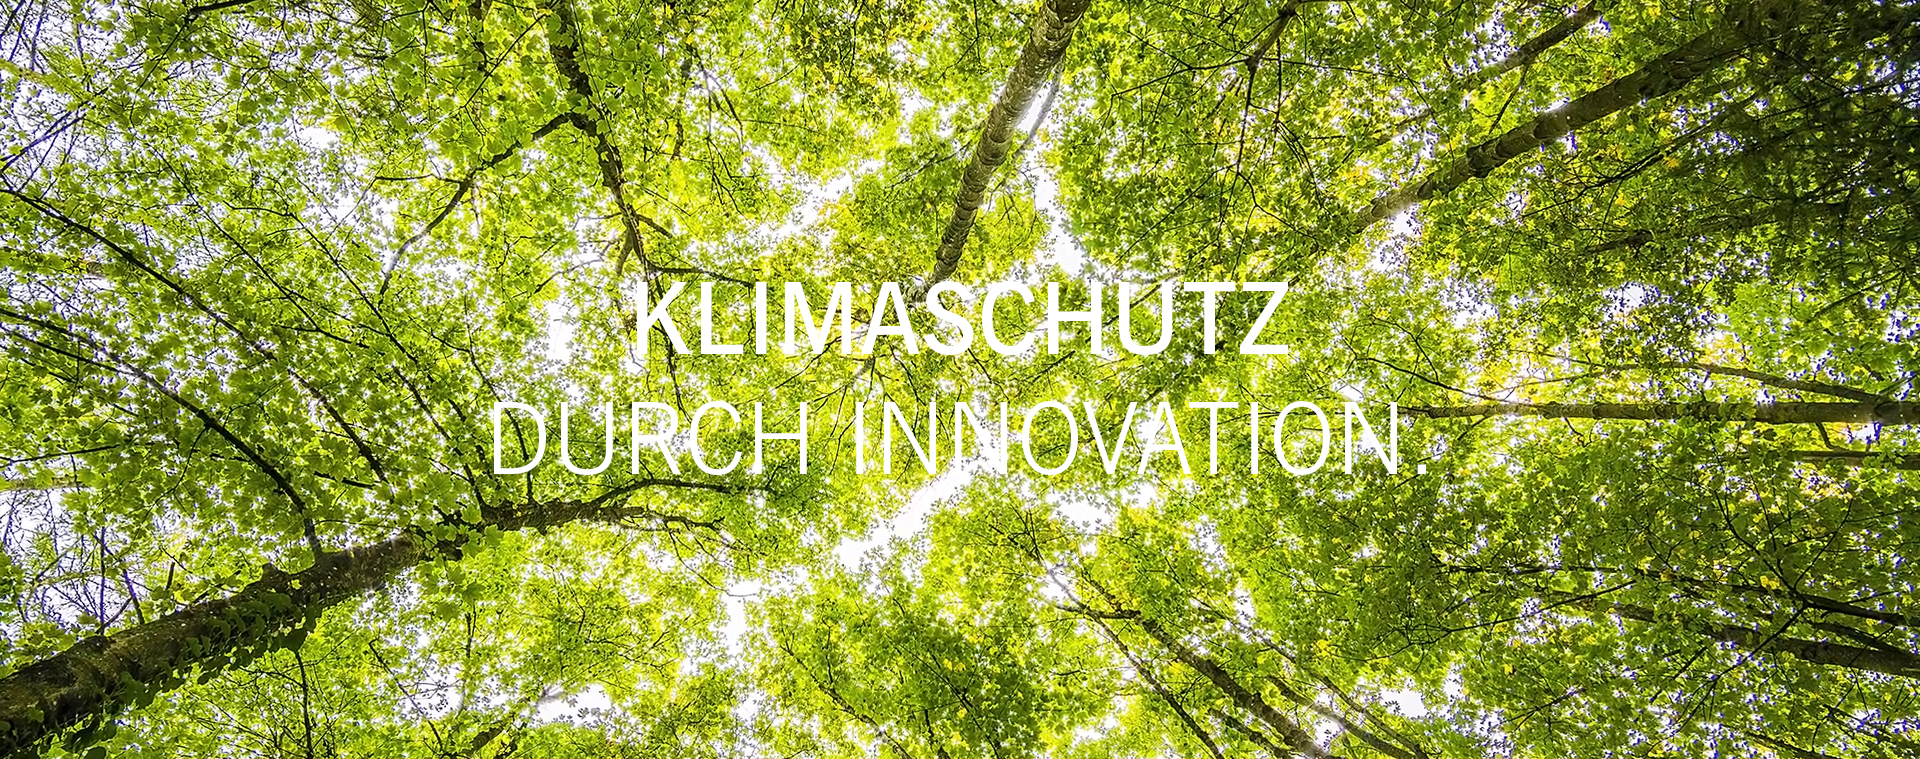 KWK-SYSTEME AUS COTTBUS | Energiesysteme aus der Lausitz